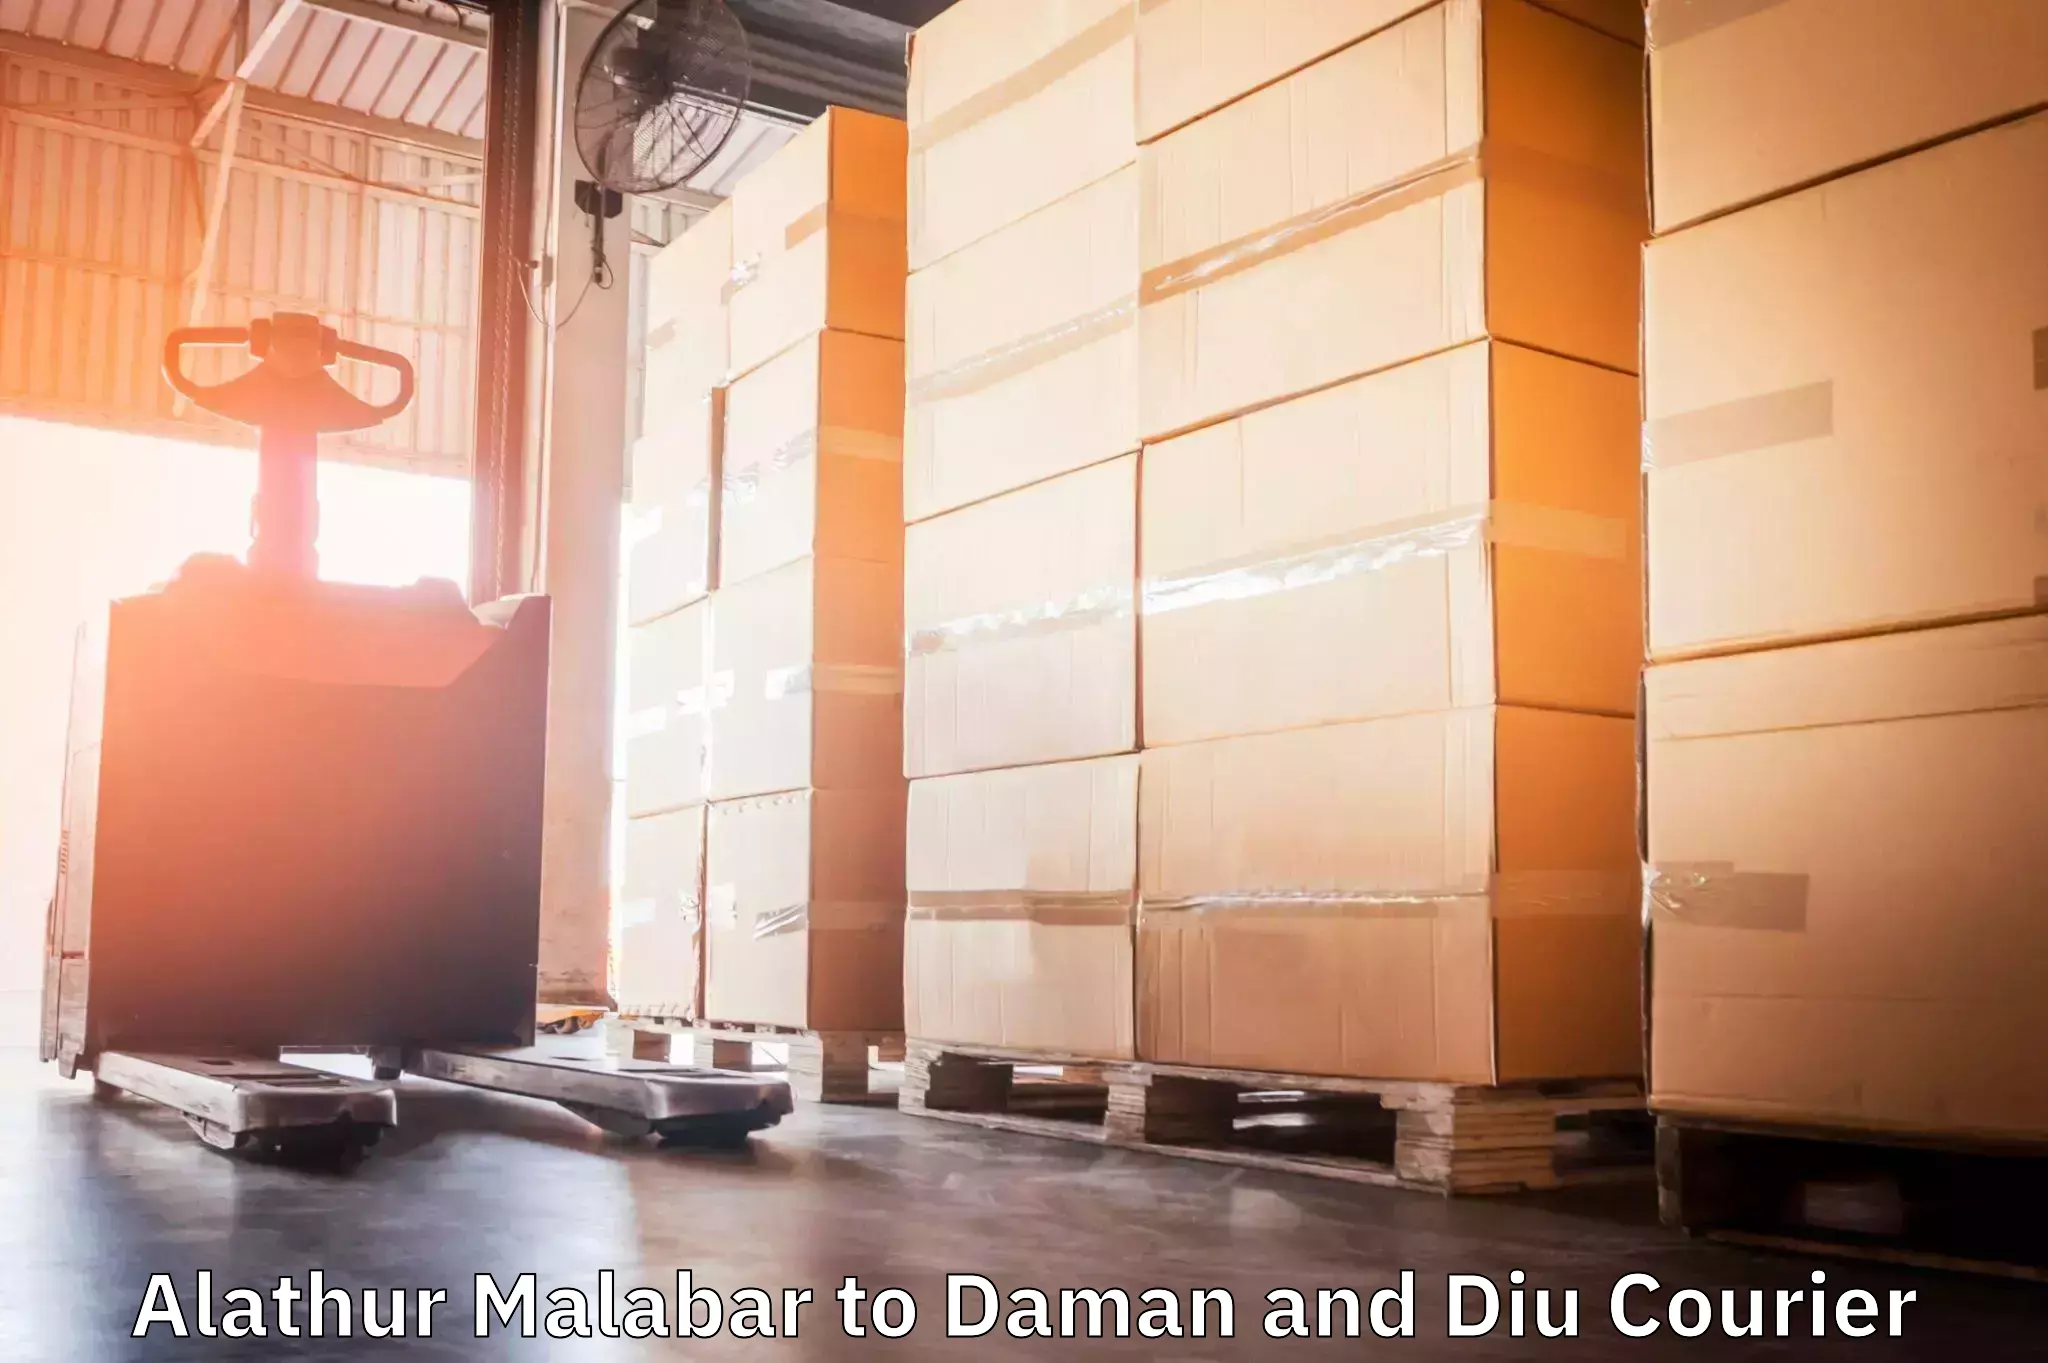 Logistics service provider Alathur Malabar to Daman and Diu